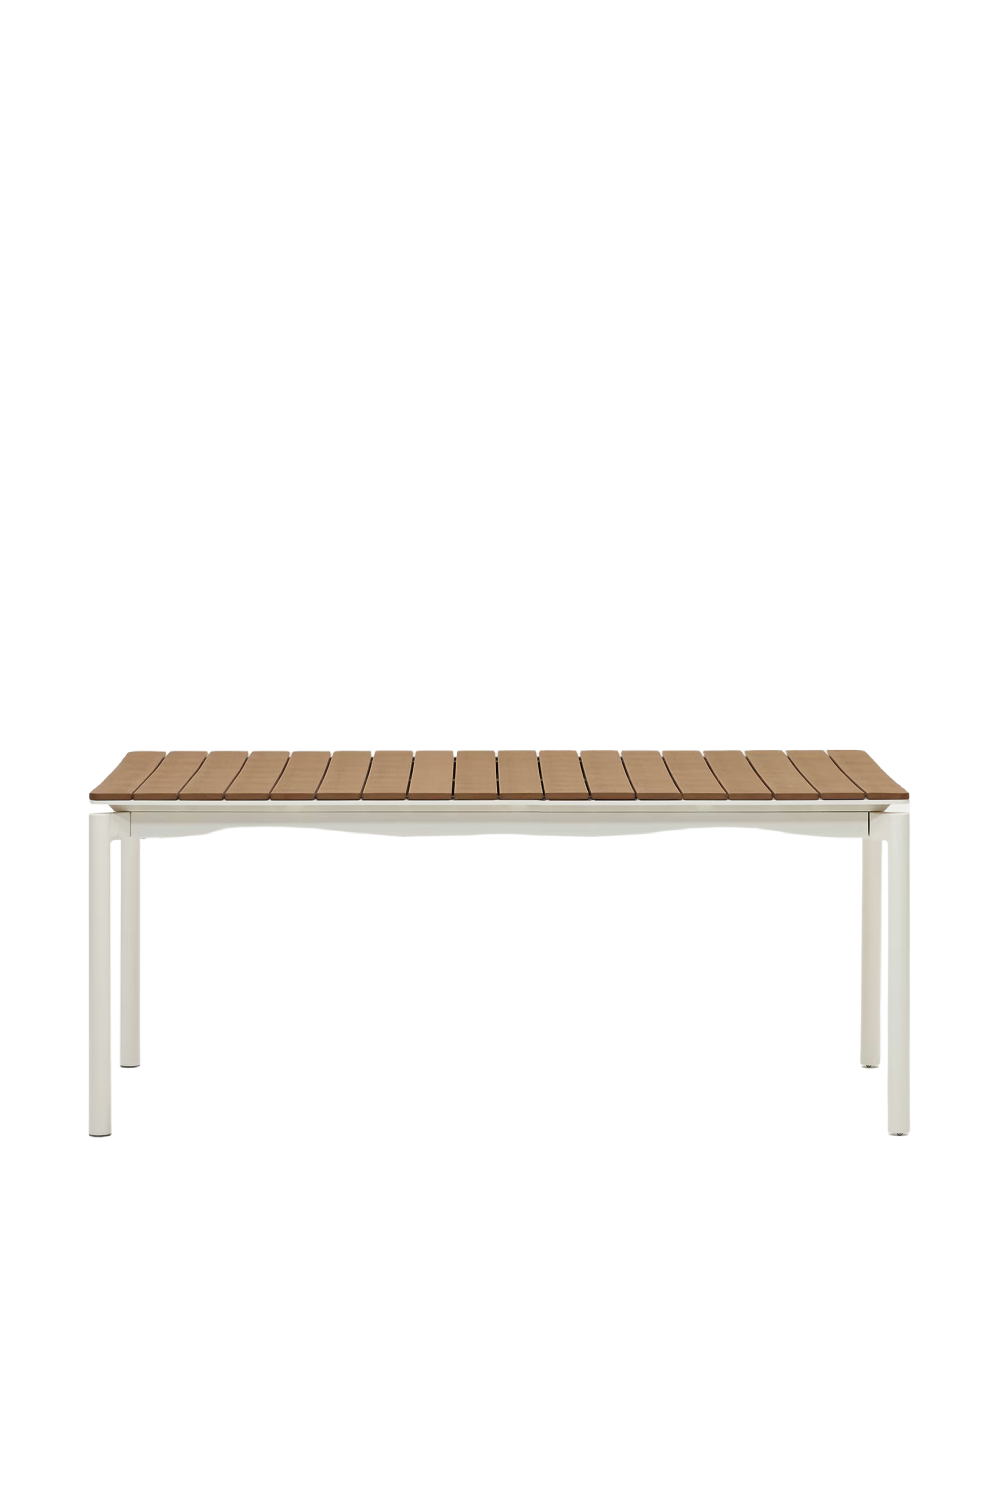 White Extendable Outdoor Table | La Forma Canyelles | Oroa.com